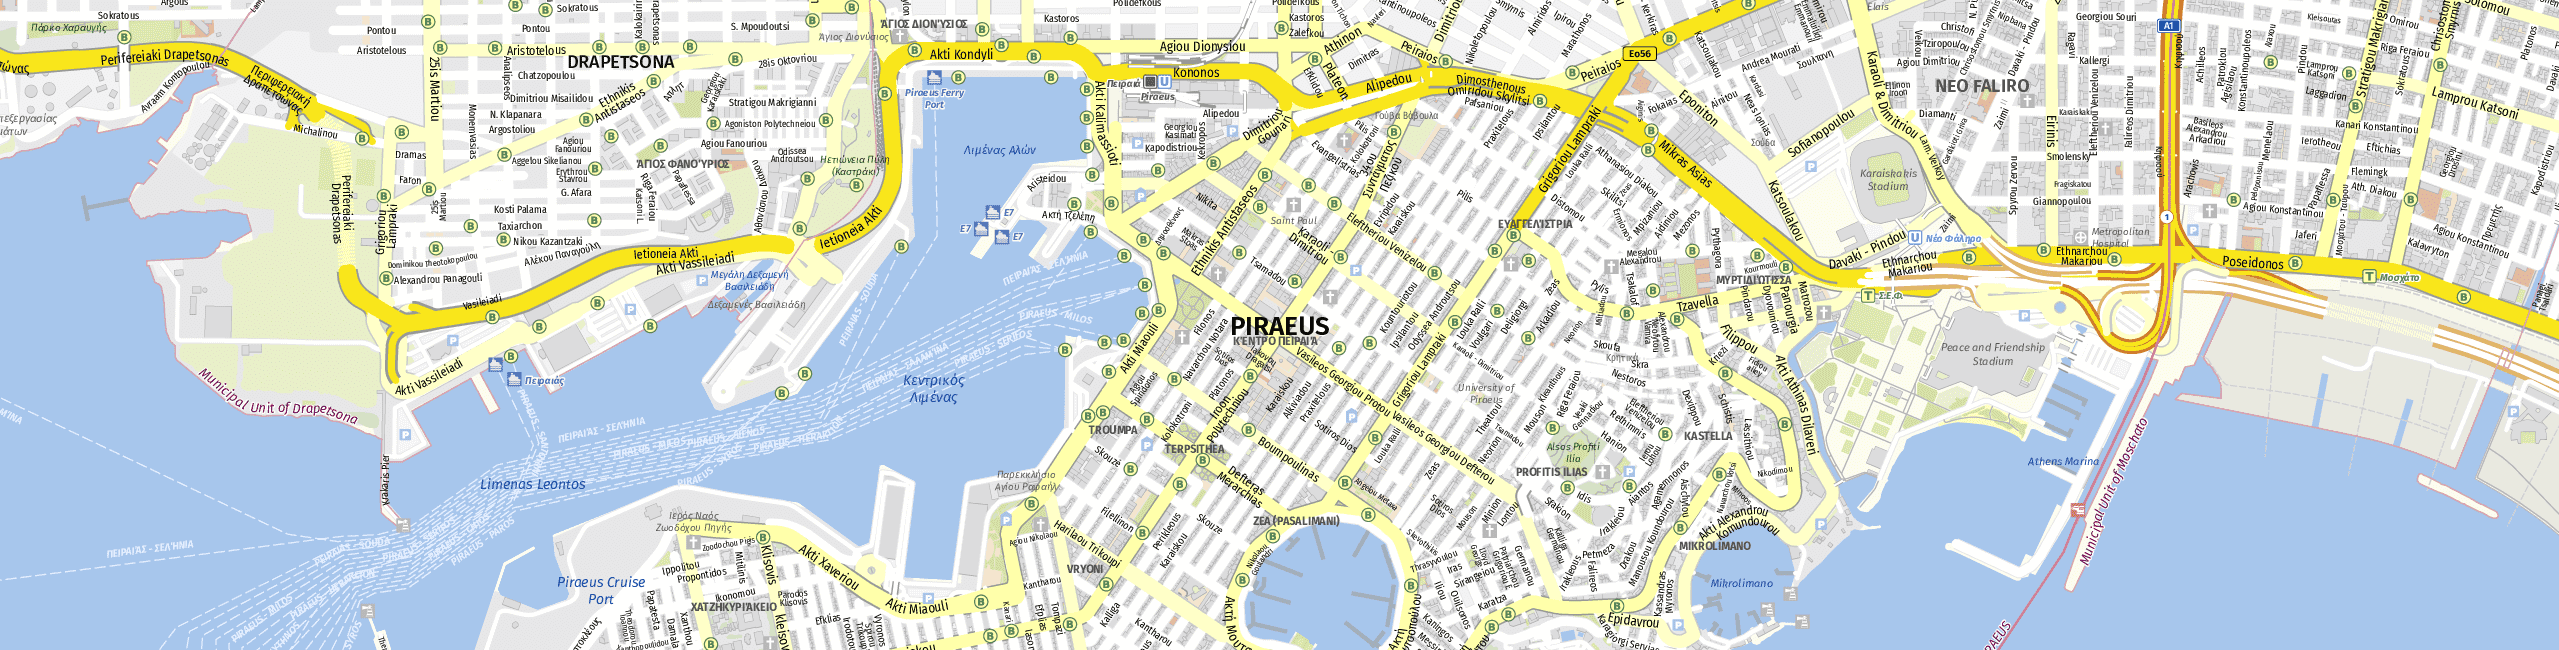 Stadtplan Piraeus zum Downloaden.